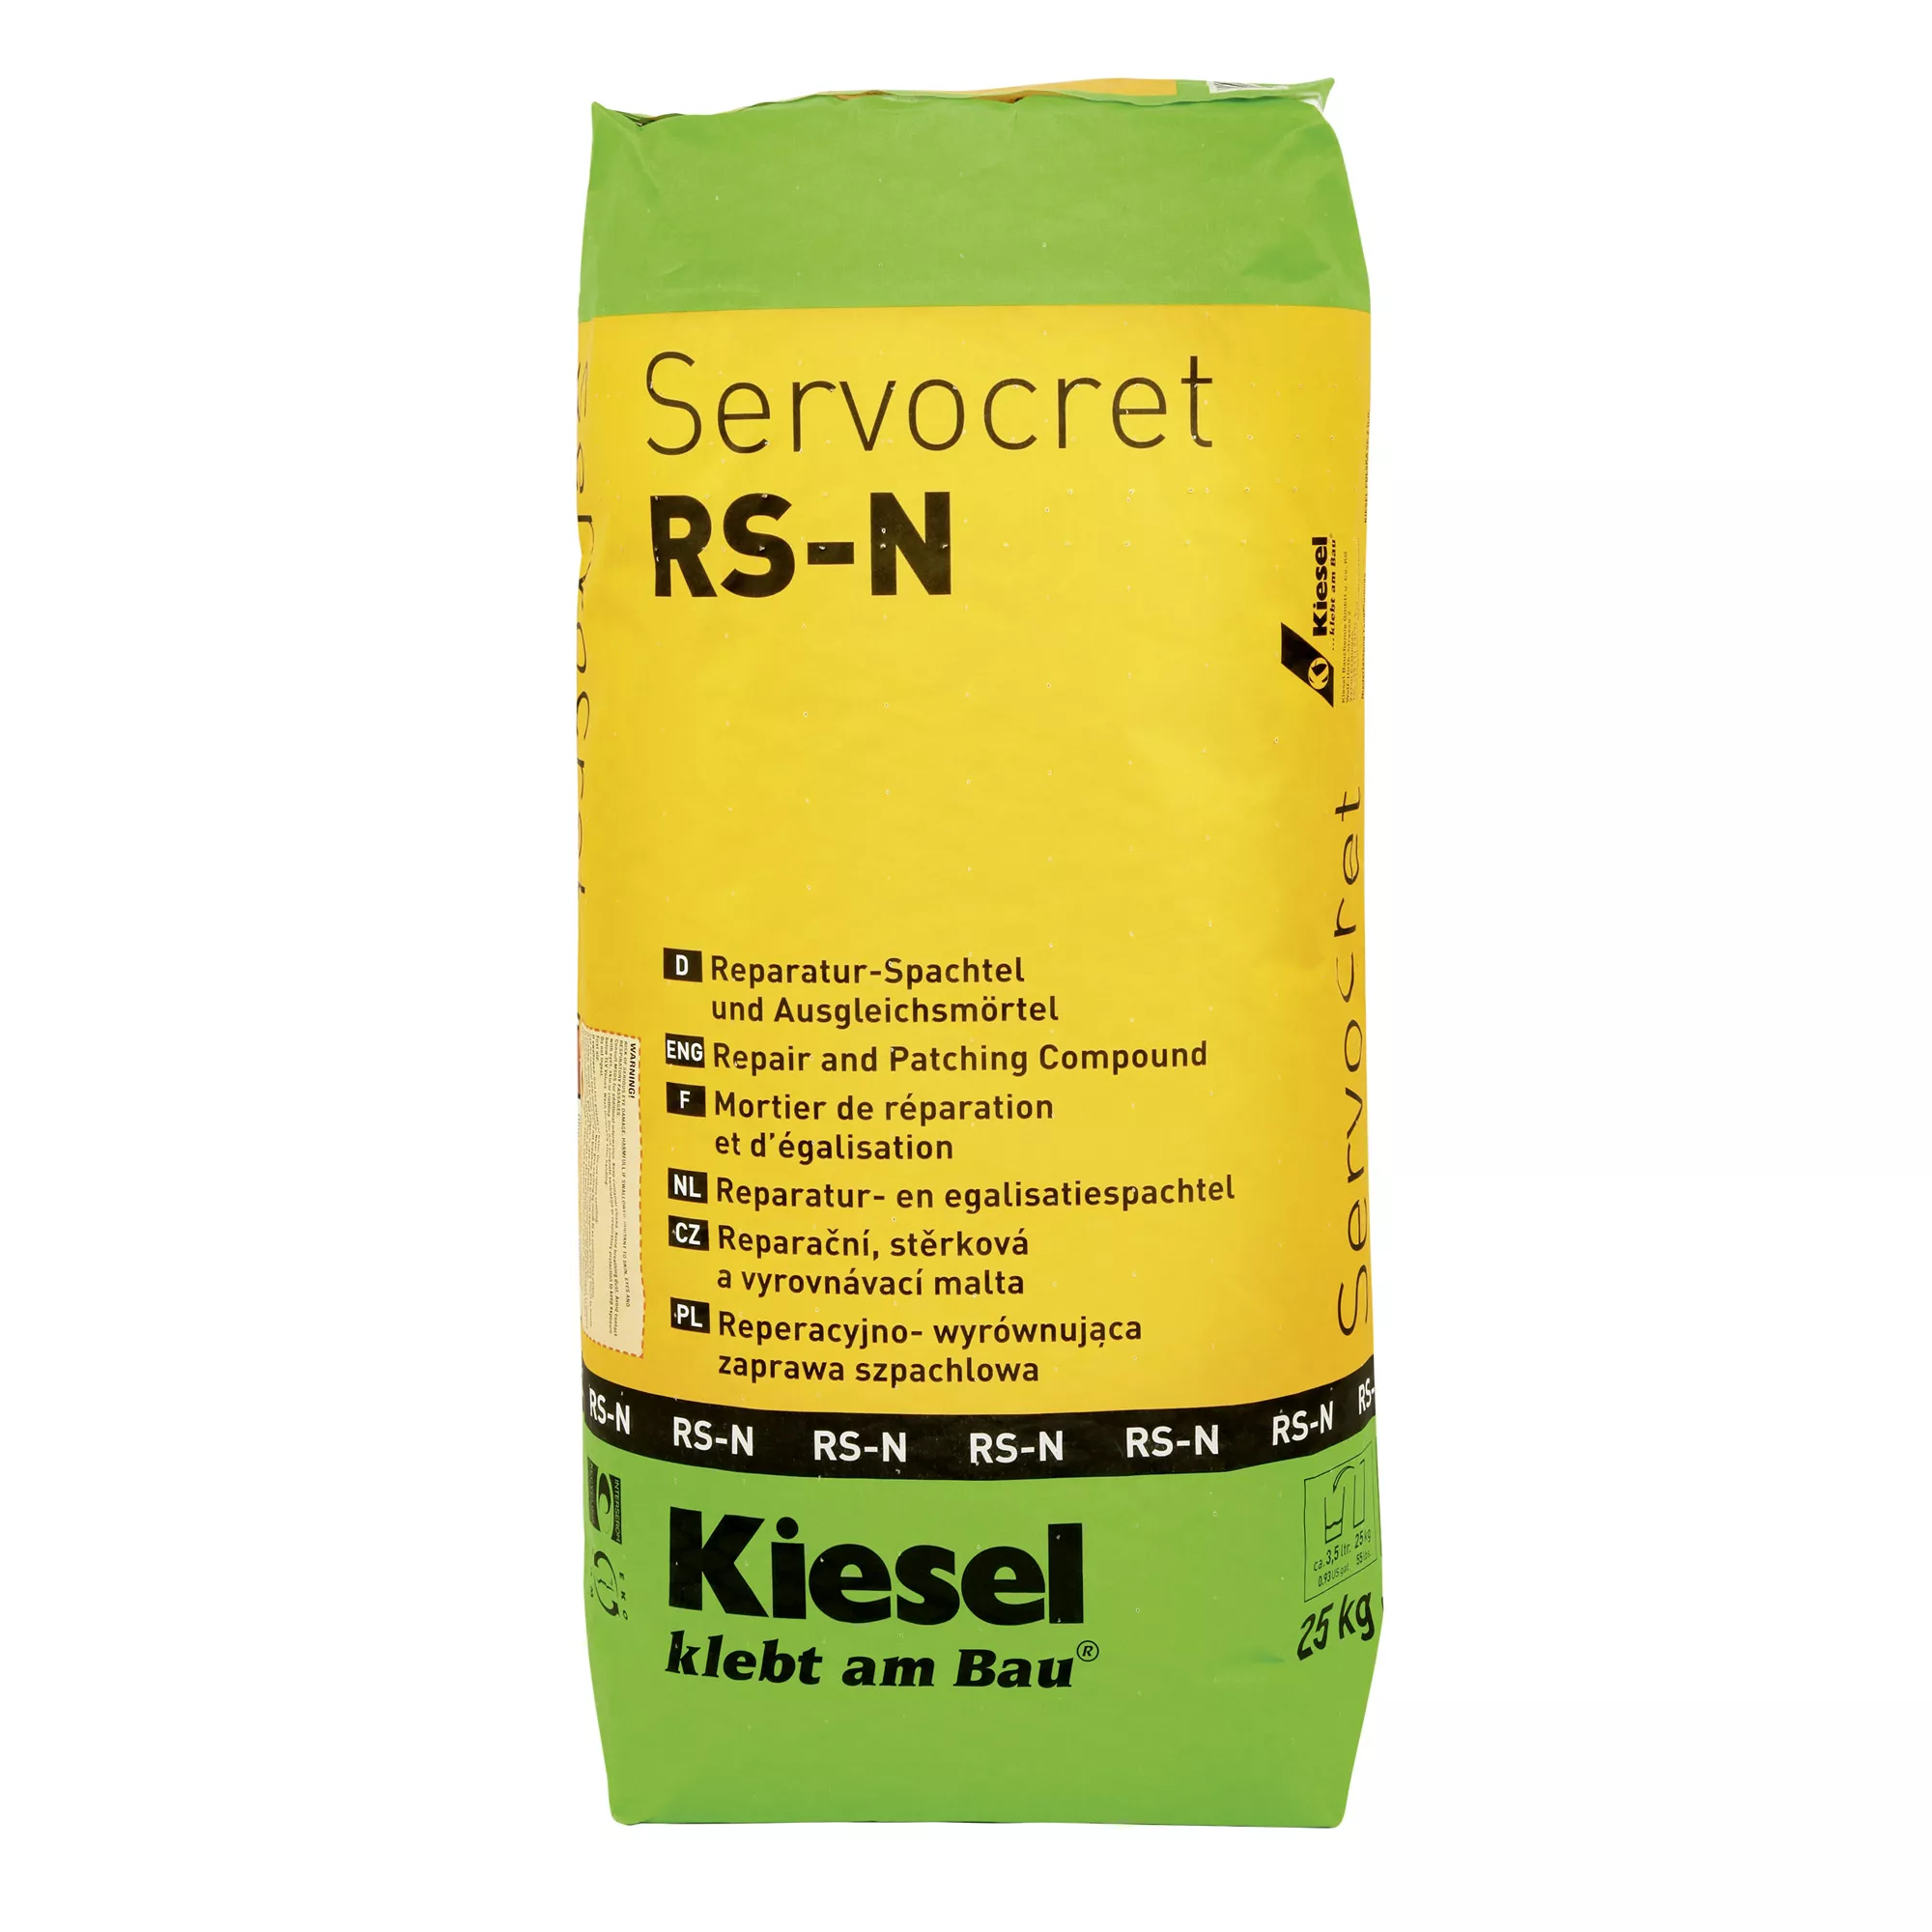 Kiesel Servocret RS-N - reparasjonsspatel og utjevningsmørtel (25KG)